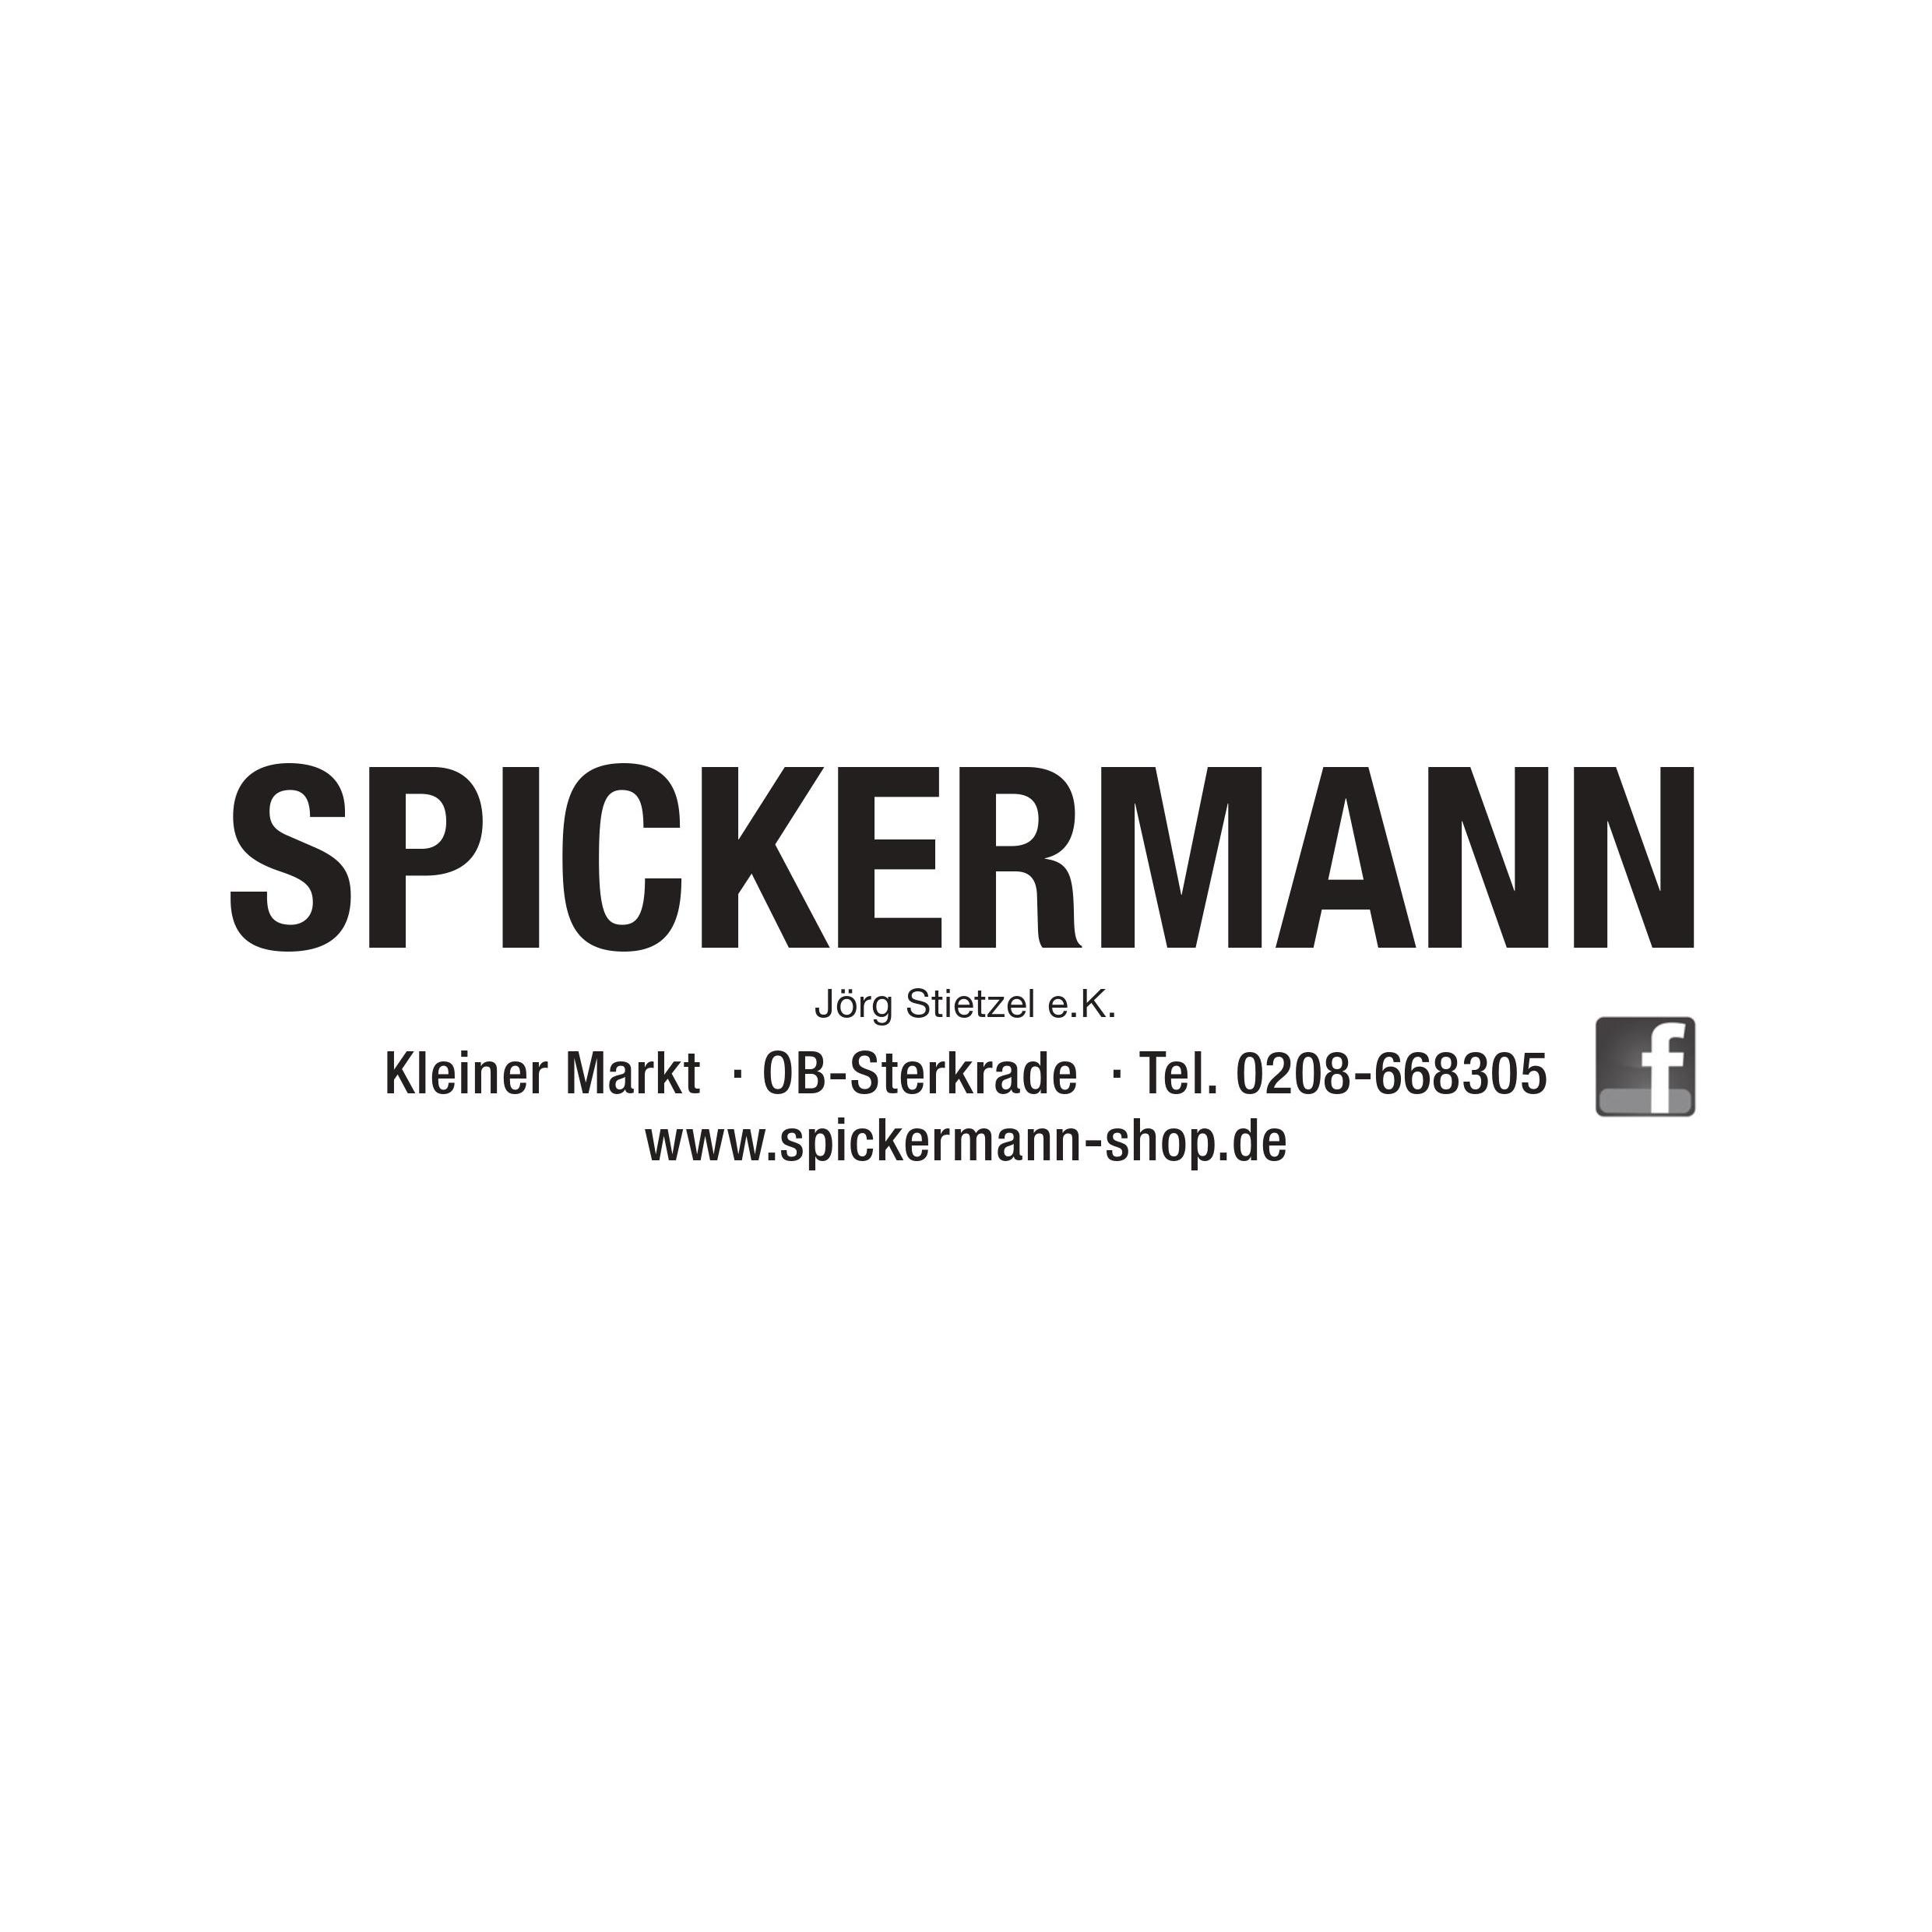 Spickermann Inh. Jörg Stietzel e.K. Logo